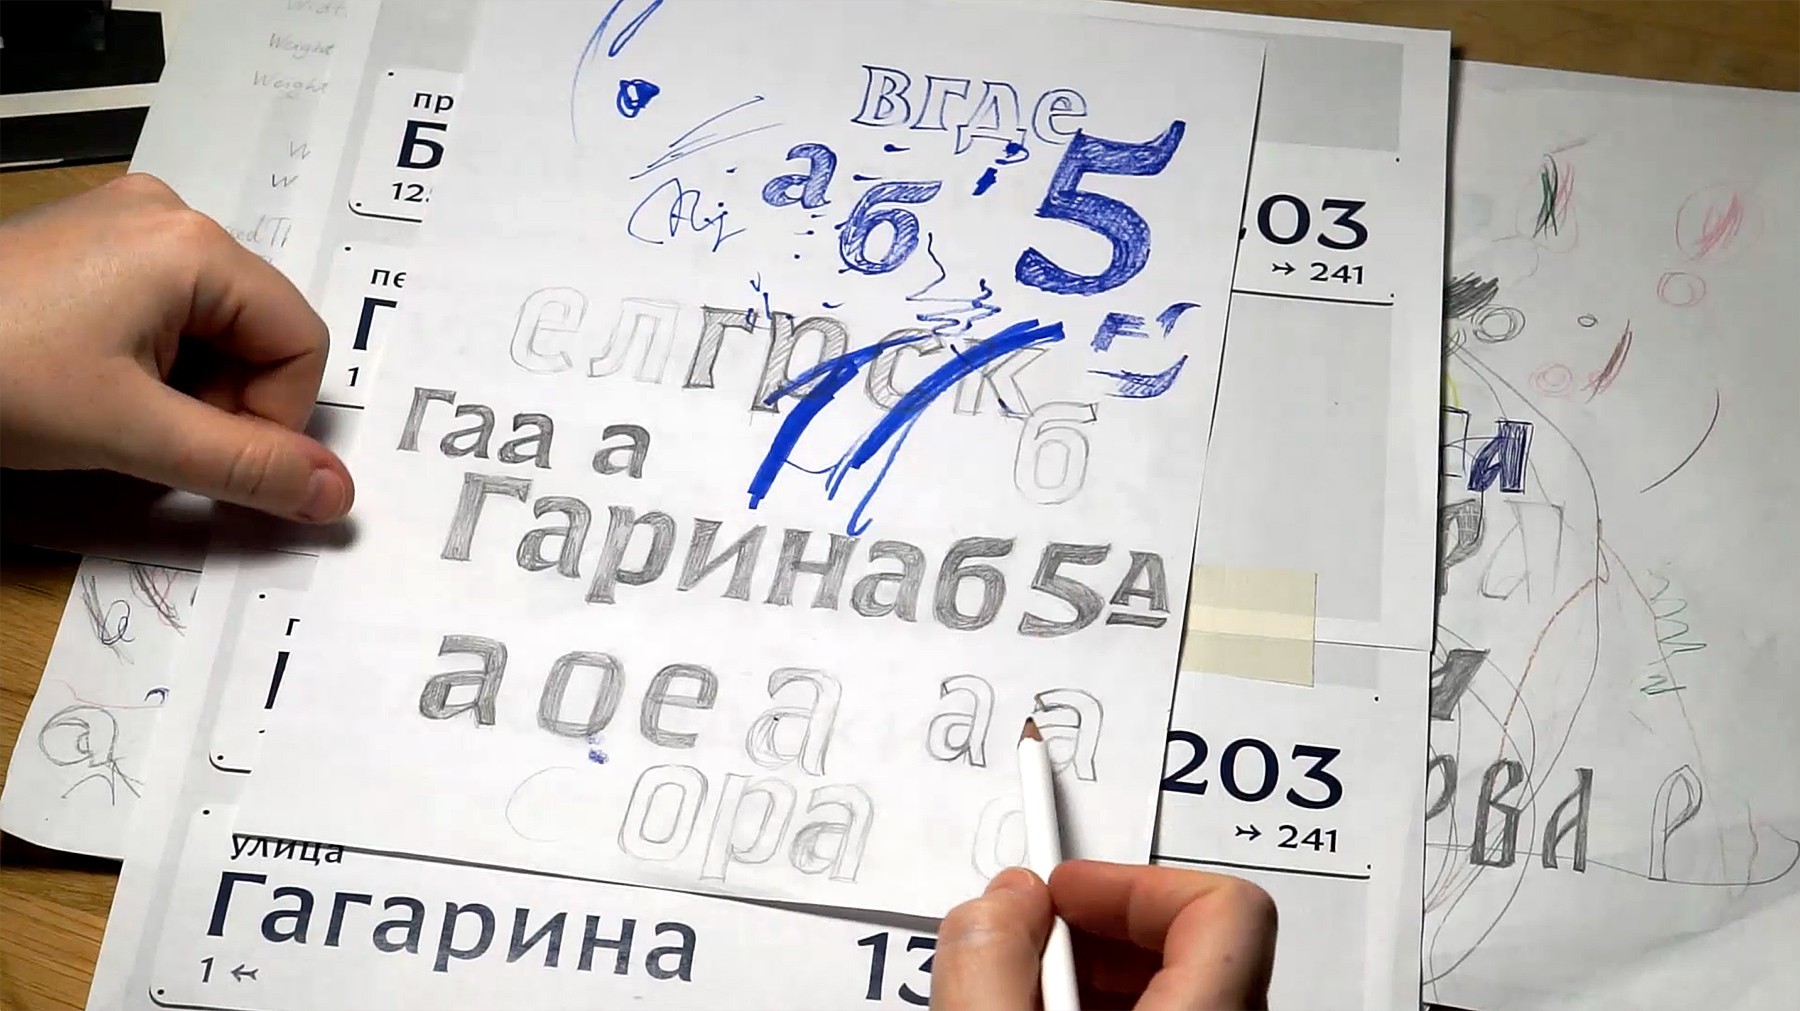 Первые эскизы белгородского навигационного шрифта